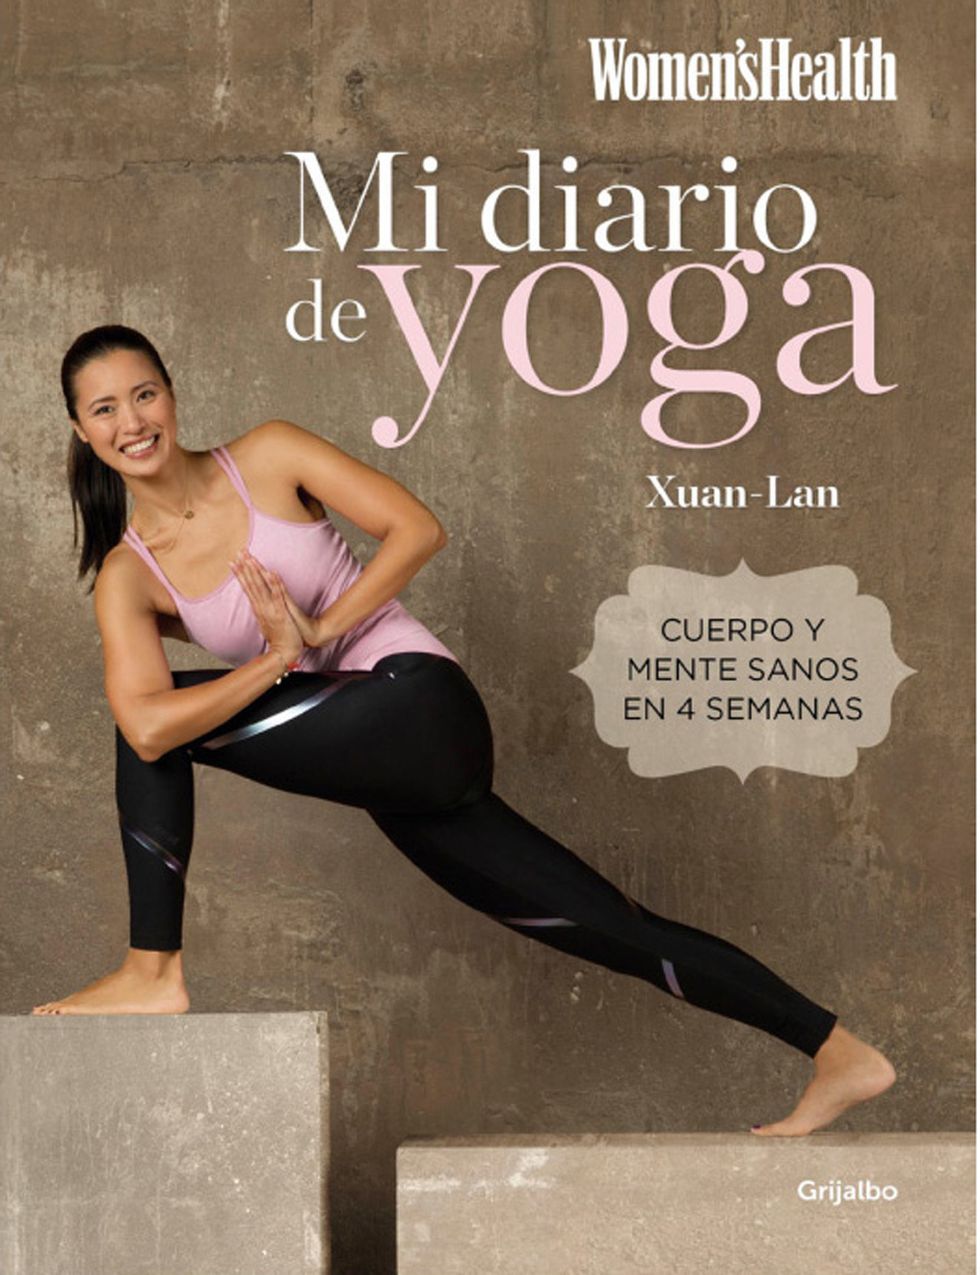 <p>Escrito por <strong>Xuan-Lan, una conocida profesora de yoga y co-fundadora del movimiento <a href="http://www.freeyoga.es/" target="_blank">Free Yoga</a></strong>, “Mi diario de yoga”&nbsp;(Grijalbo) &nbsp;surge con la vocación de ser&nbsp;la guía de yoga esencial y definitiva para urbanitas.&nbsp;Xuan-Lan,&nbsp;<strong>creadora del método Yogalan, propone una obra práctica e imprescindible</strong> para conocer los principios y técnicas básicas del yoga dinámico, descubrir sus beneficios físicos, convertir esta disciplina&nbsp;no solo en una forma de estar en forma sino también&nbsp;en un estilo de vida&nbsp;que para disfrutar más del día a día. <strong>Plan de 28 días.</strong> Xuan-Lan desentraña los conceptos básicos del yoga a través de&nbsp;un plan de 28 días con el que podrás dominará <strong>posturas, ejercicios de meditación y de respiración&nbsp;y secuencias completas de yoga dinámico</strong> para desarrollar un cuerpo fuerte y sano, sentirte bien contigo misma y estar en armonía con tu entorno.&nbsp;<strong>Psst.</strong> Como cuenta la propia autora, “después de 10 años trabajando en el mundo del marketing y de la banca, decidí dar un giro a mi vida profesional <strong>dejando un trabajo estable para&nbsp;dedicarme a la enseñanza del yoga</strong> y para dar bienestar. Transmitir esta disciplina con un método práctico y accesible&nbsp;a todos me hace sentir muy feliz. El yoga ha cambiado mi vida y estoy segura que cambiará la tuya también.” ¡A nosotras nos ha convencido ya!</p>